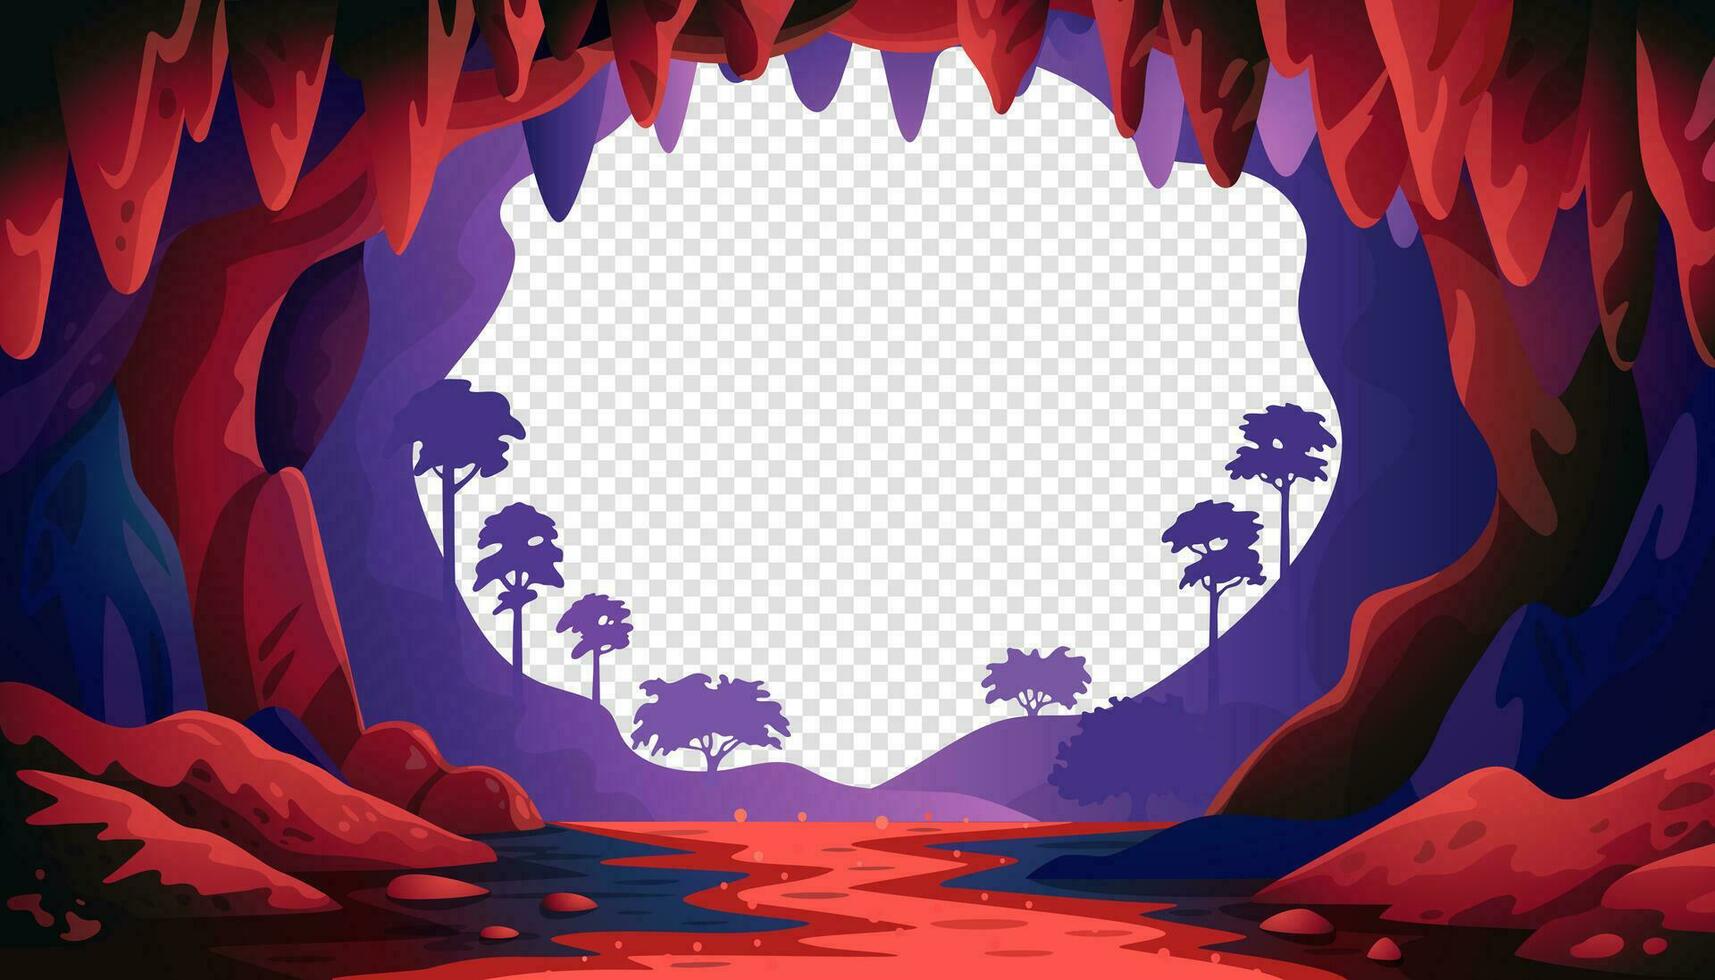 Dschungel-Vektorlandschaft. Höhlenlandschaft mit einem unterirdischen roten Fluss und Wald. vektorillustration im flachen karikaturstil vektor